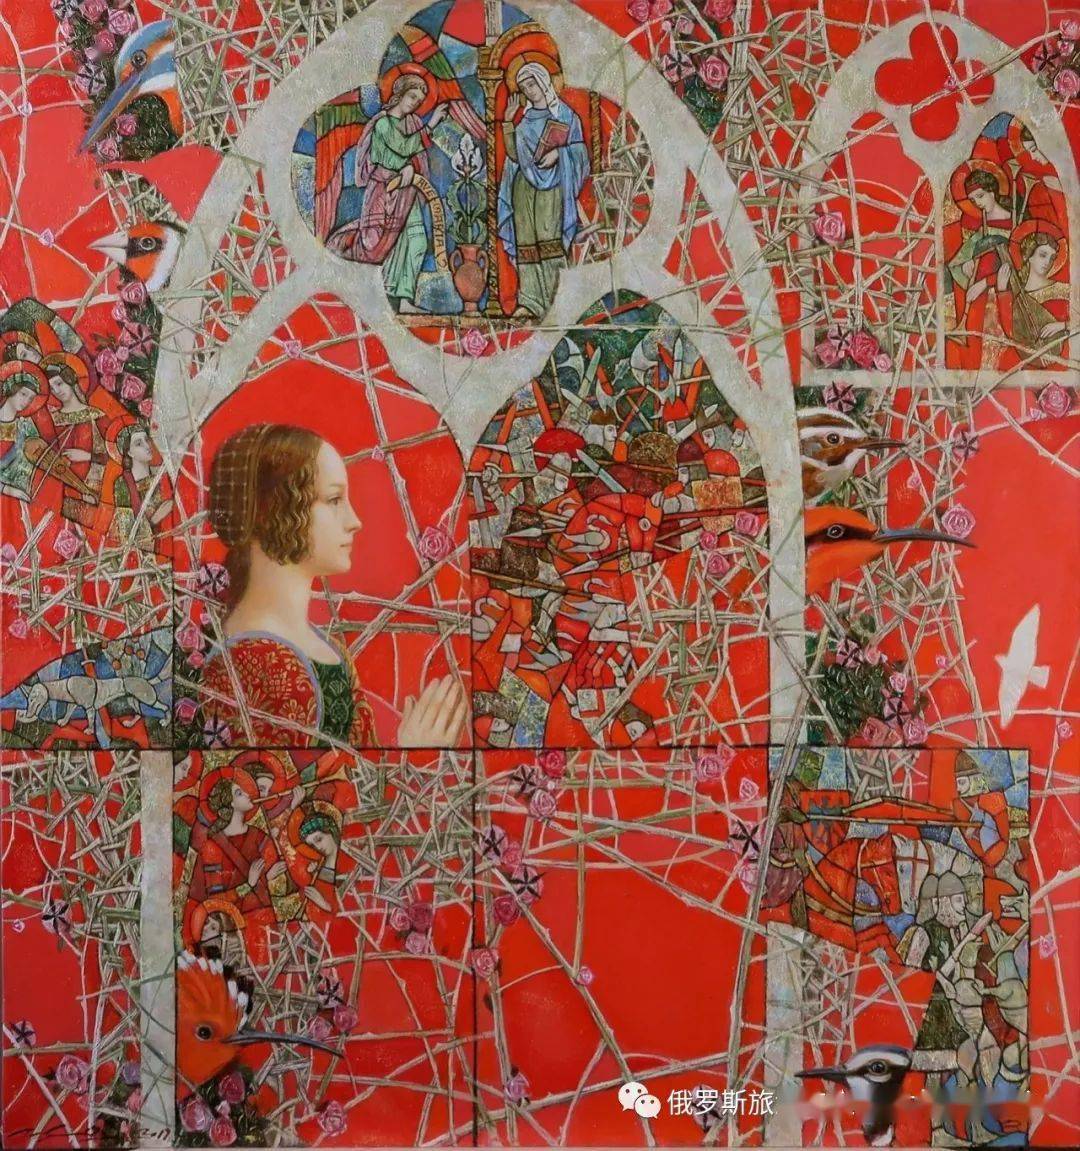 【艺术】俄罗斯画家波基德舍夫·帕维尔·瓦西里耶维奇的作品